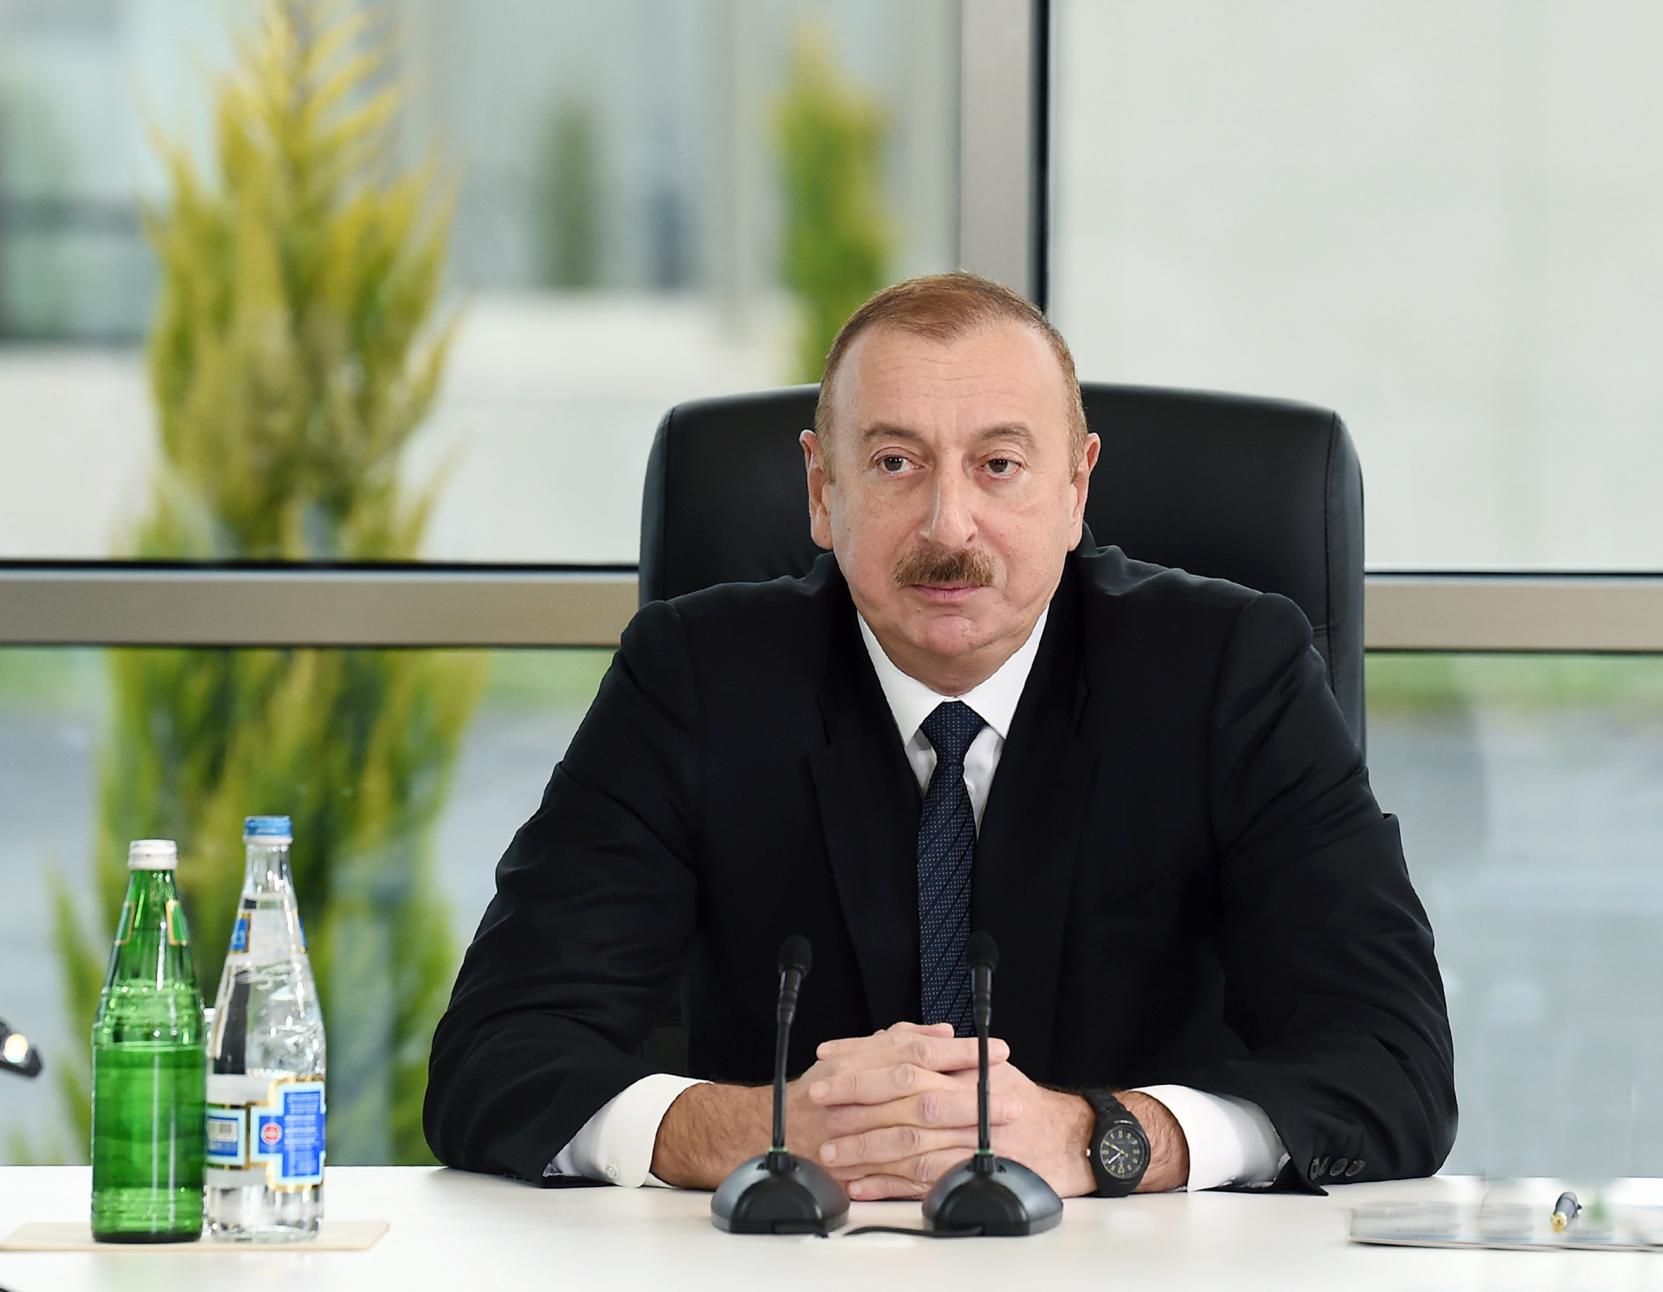 Azərbaycan lideri: “Energetika sahəsində yeni istiqamətlər üzrə fəal işləyəcəyik”